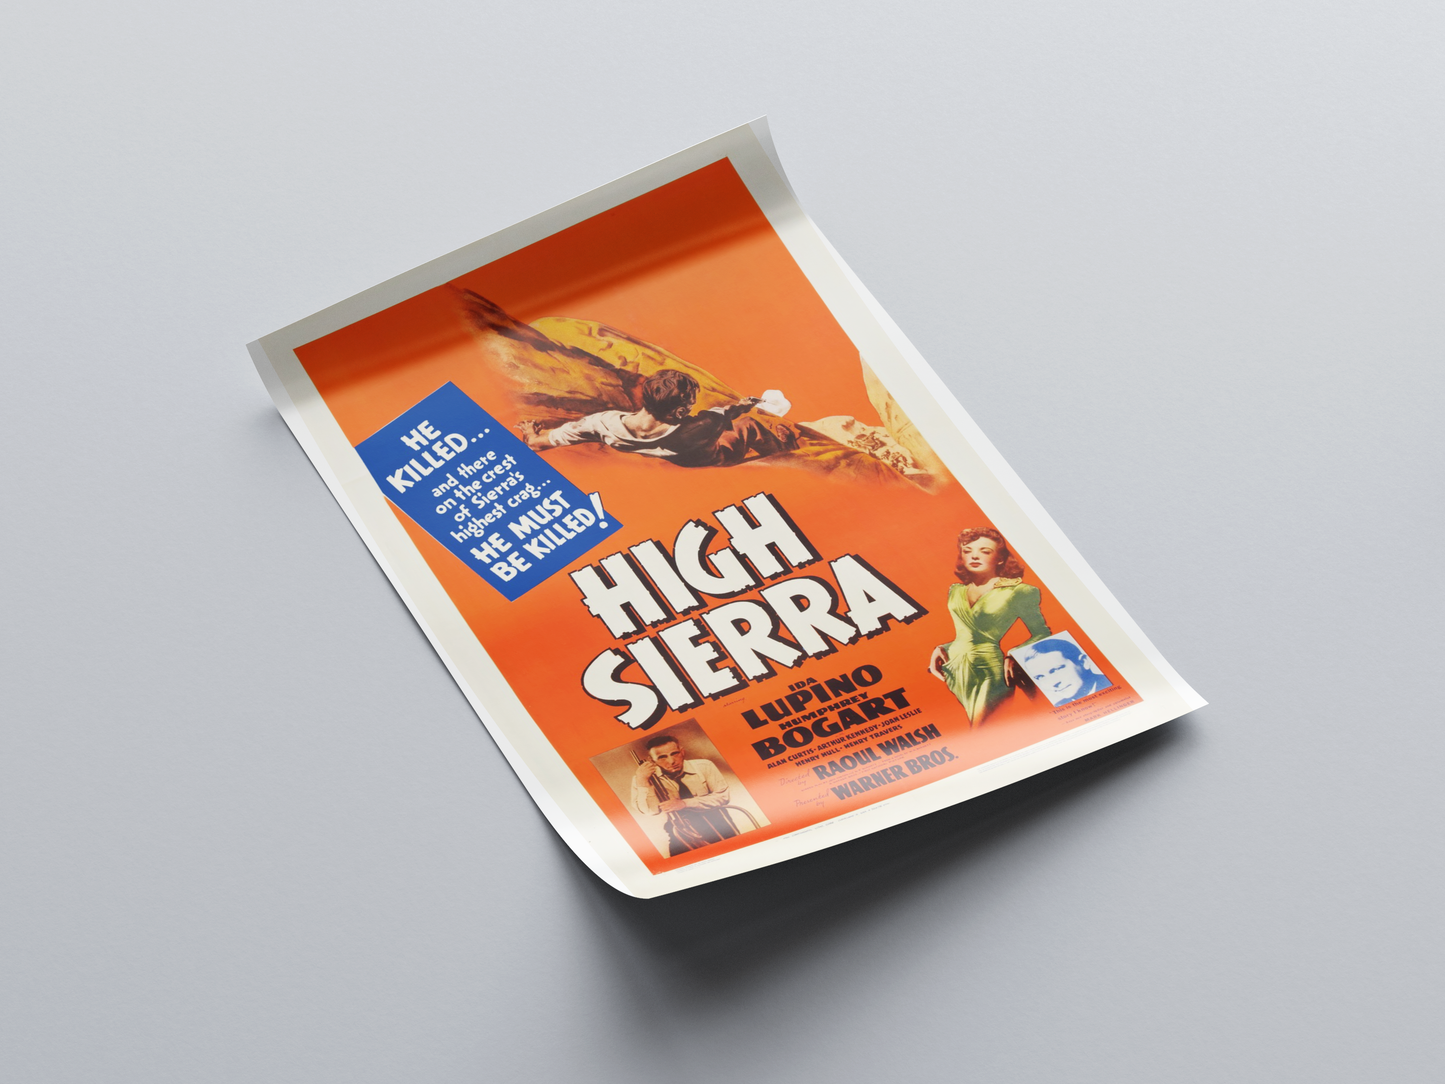 High Sierra (1941)